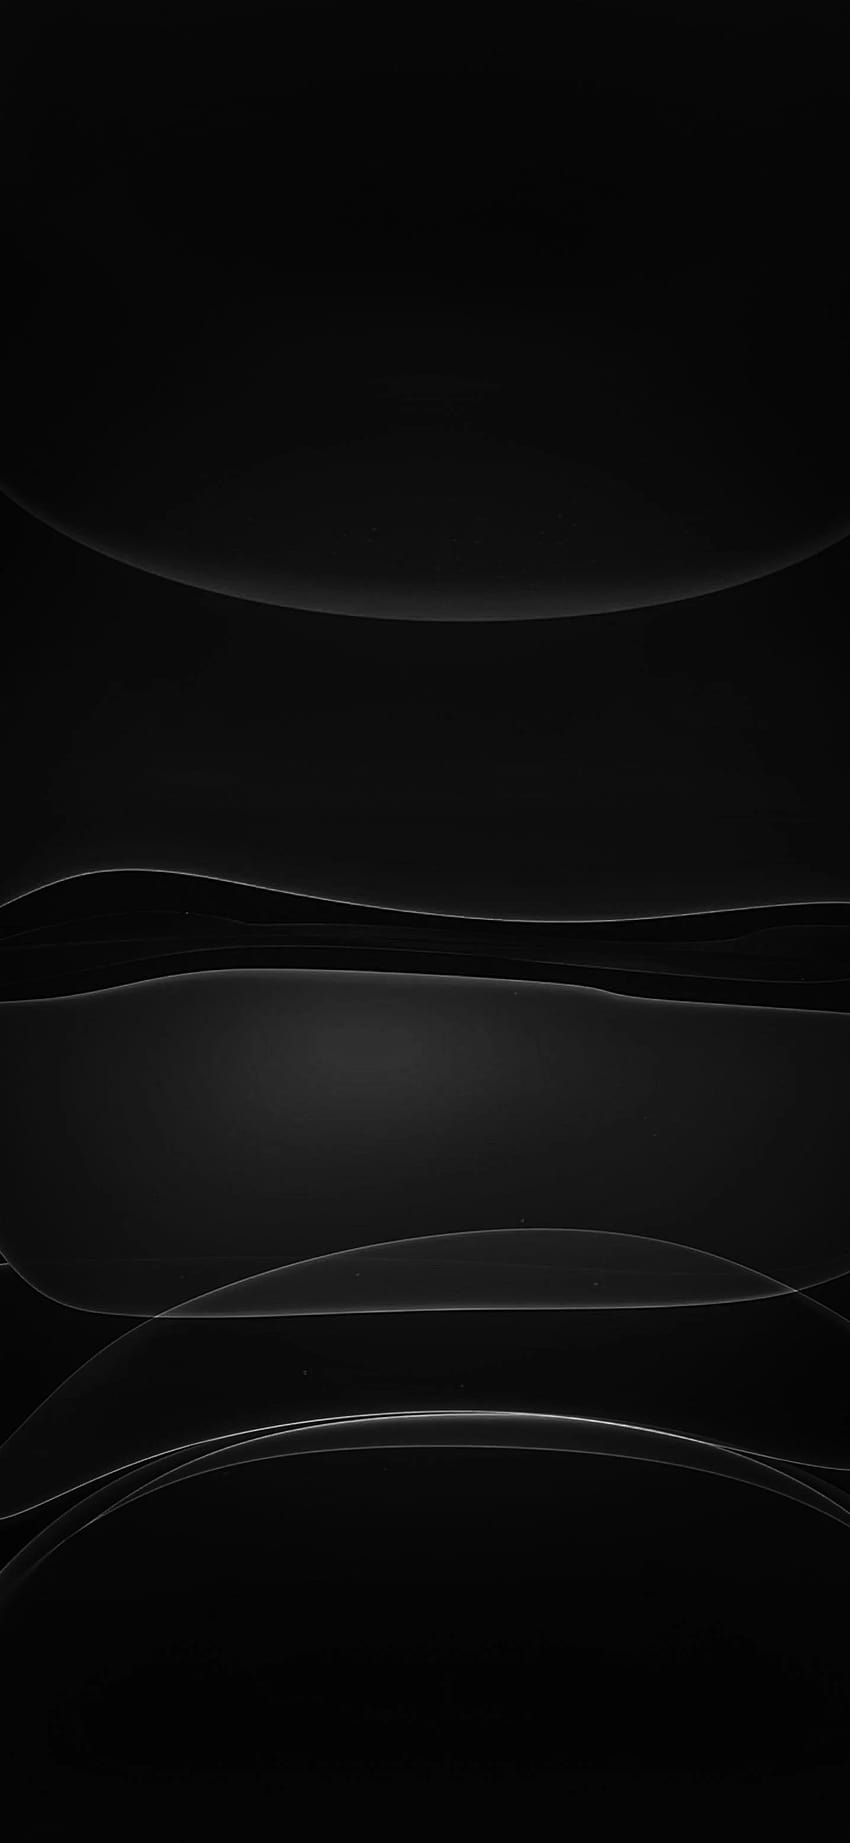 Tận hưởng vẻ đẹp của iPhone 12 Pro Max Black Wallpaper với hình ảnh tuyệt đẹp và độ phân giải cao. Khám phá thiết kế đẹp mắt, tinh tế và sang trọng của điện thoại của bạn bằng hình nền này!